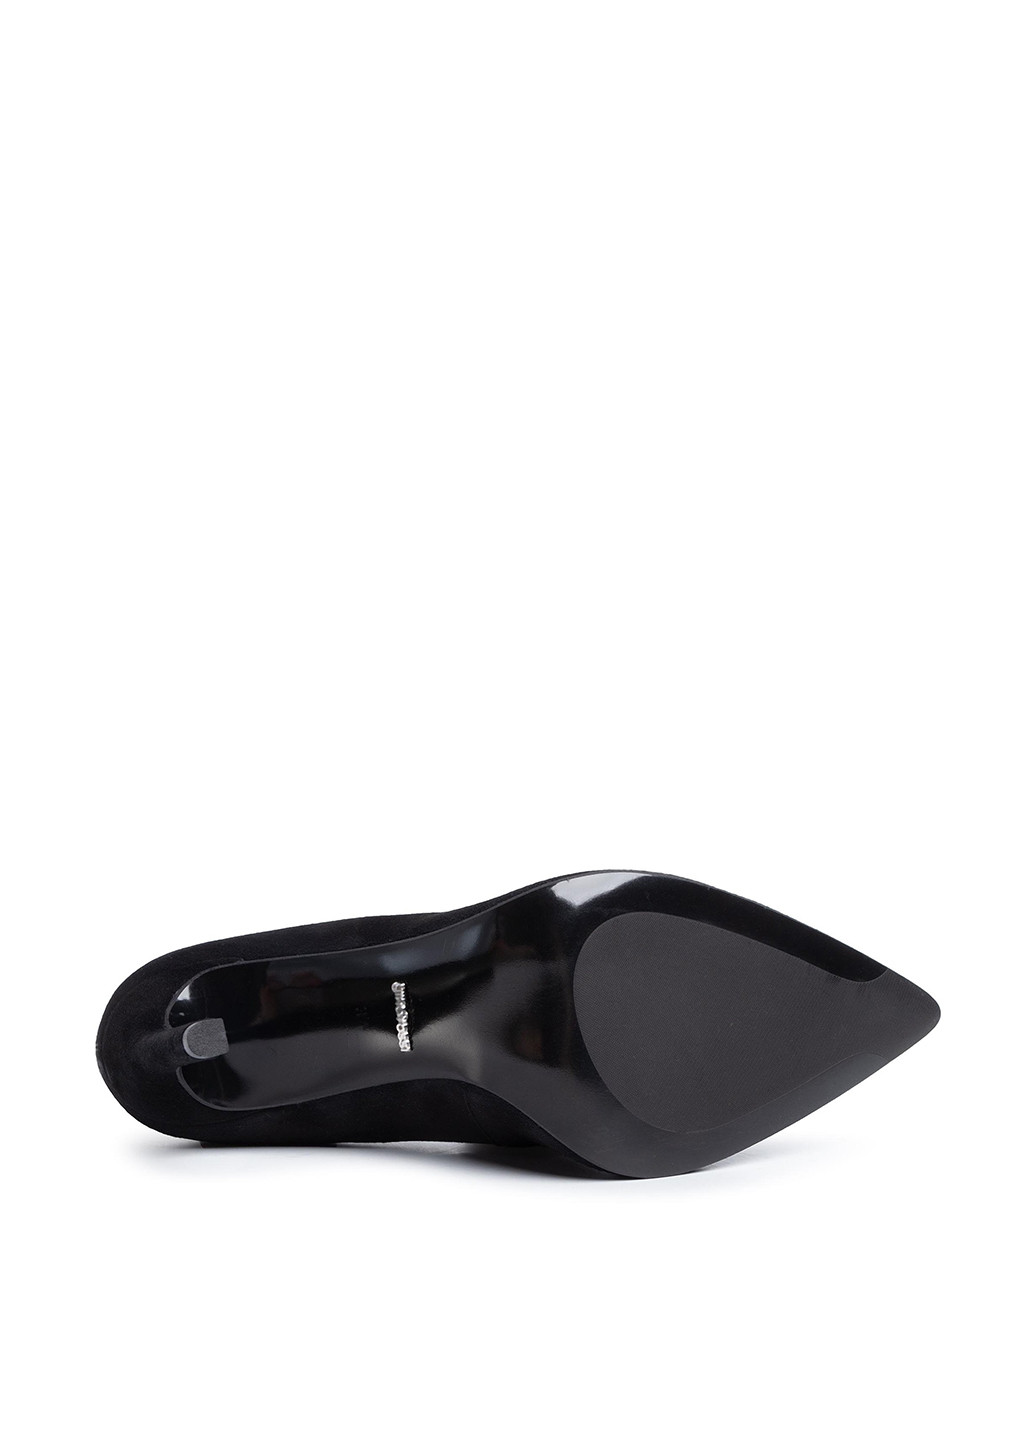 Напівчеревики Gino Rossi Premium DCK318-MIYA Gino Rossi Premium туфлі-човники однотонні чорні кежуали